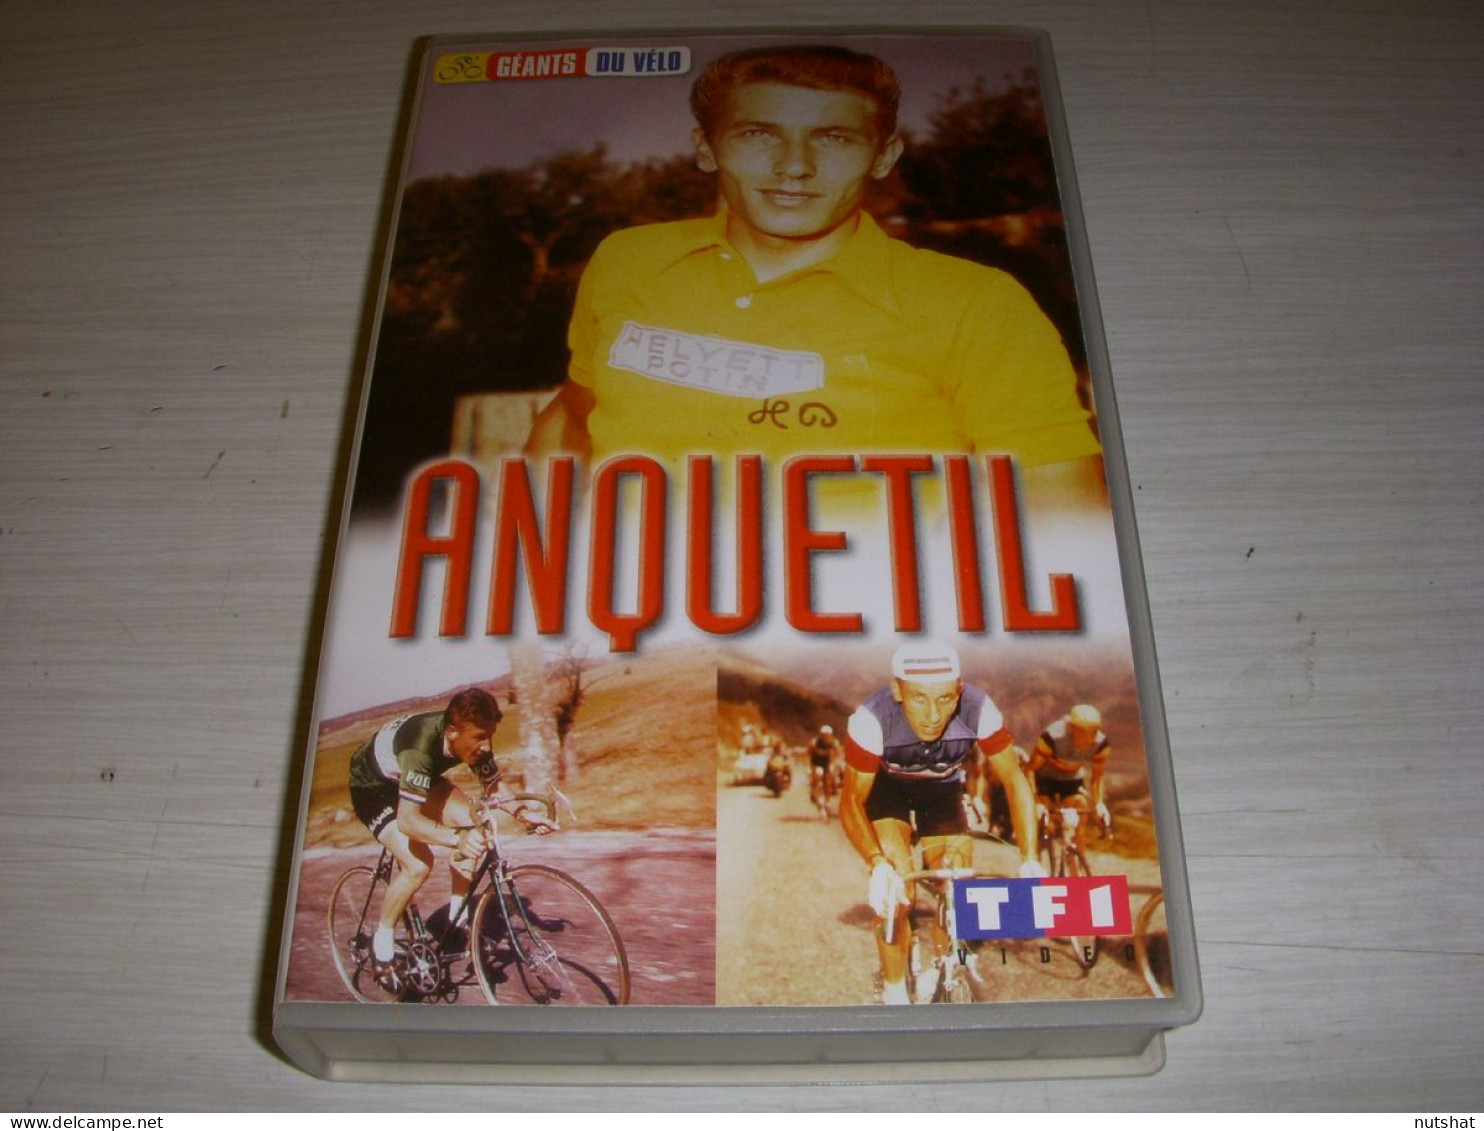 CYCLISME CASSETTE VHS Les GEANTS Du VELO Jacques ANQUETIL 75mn - Deporte